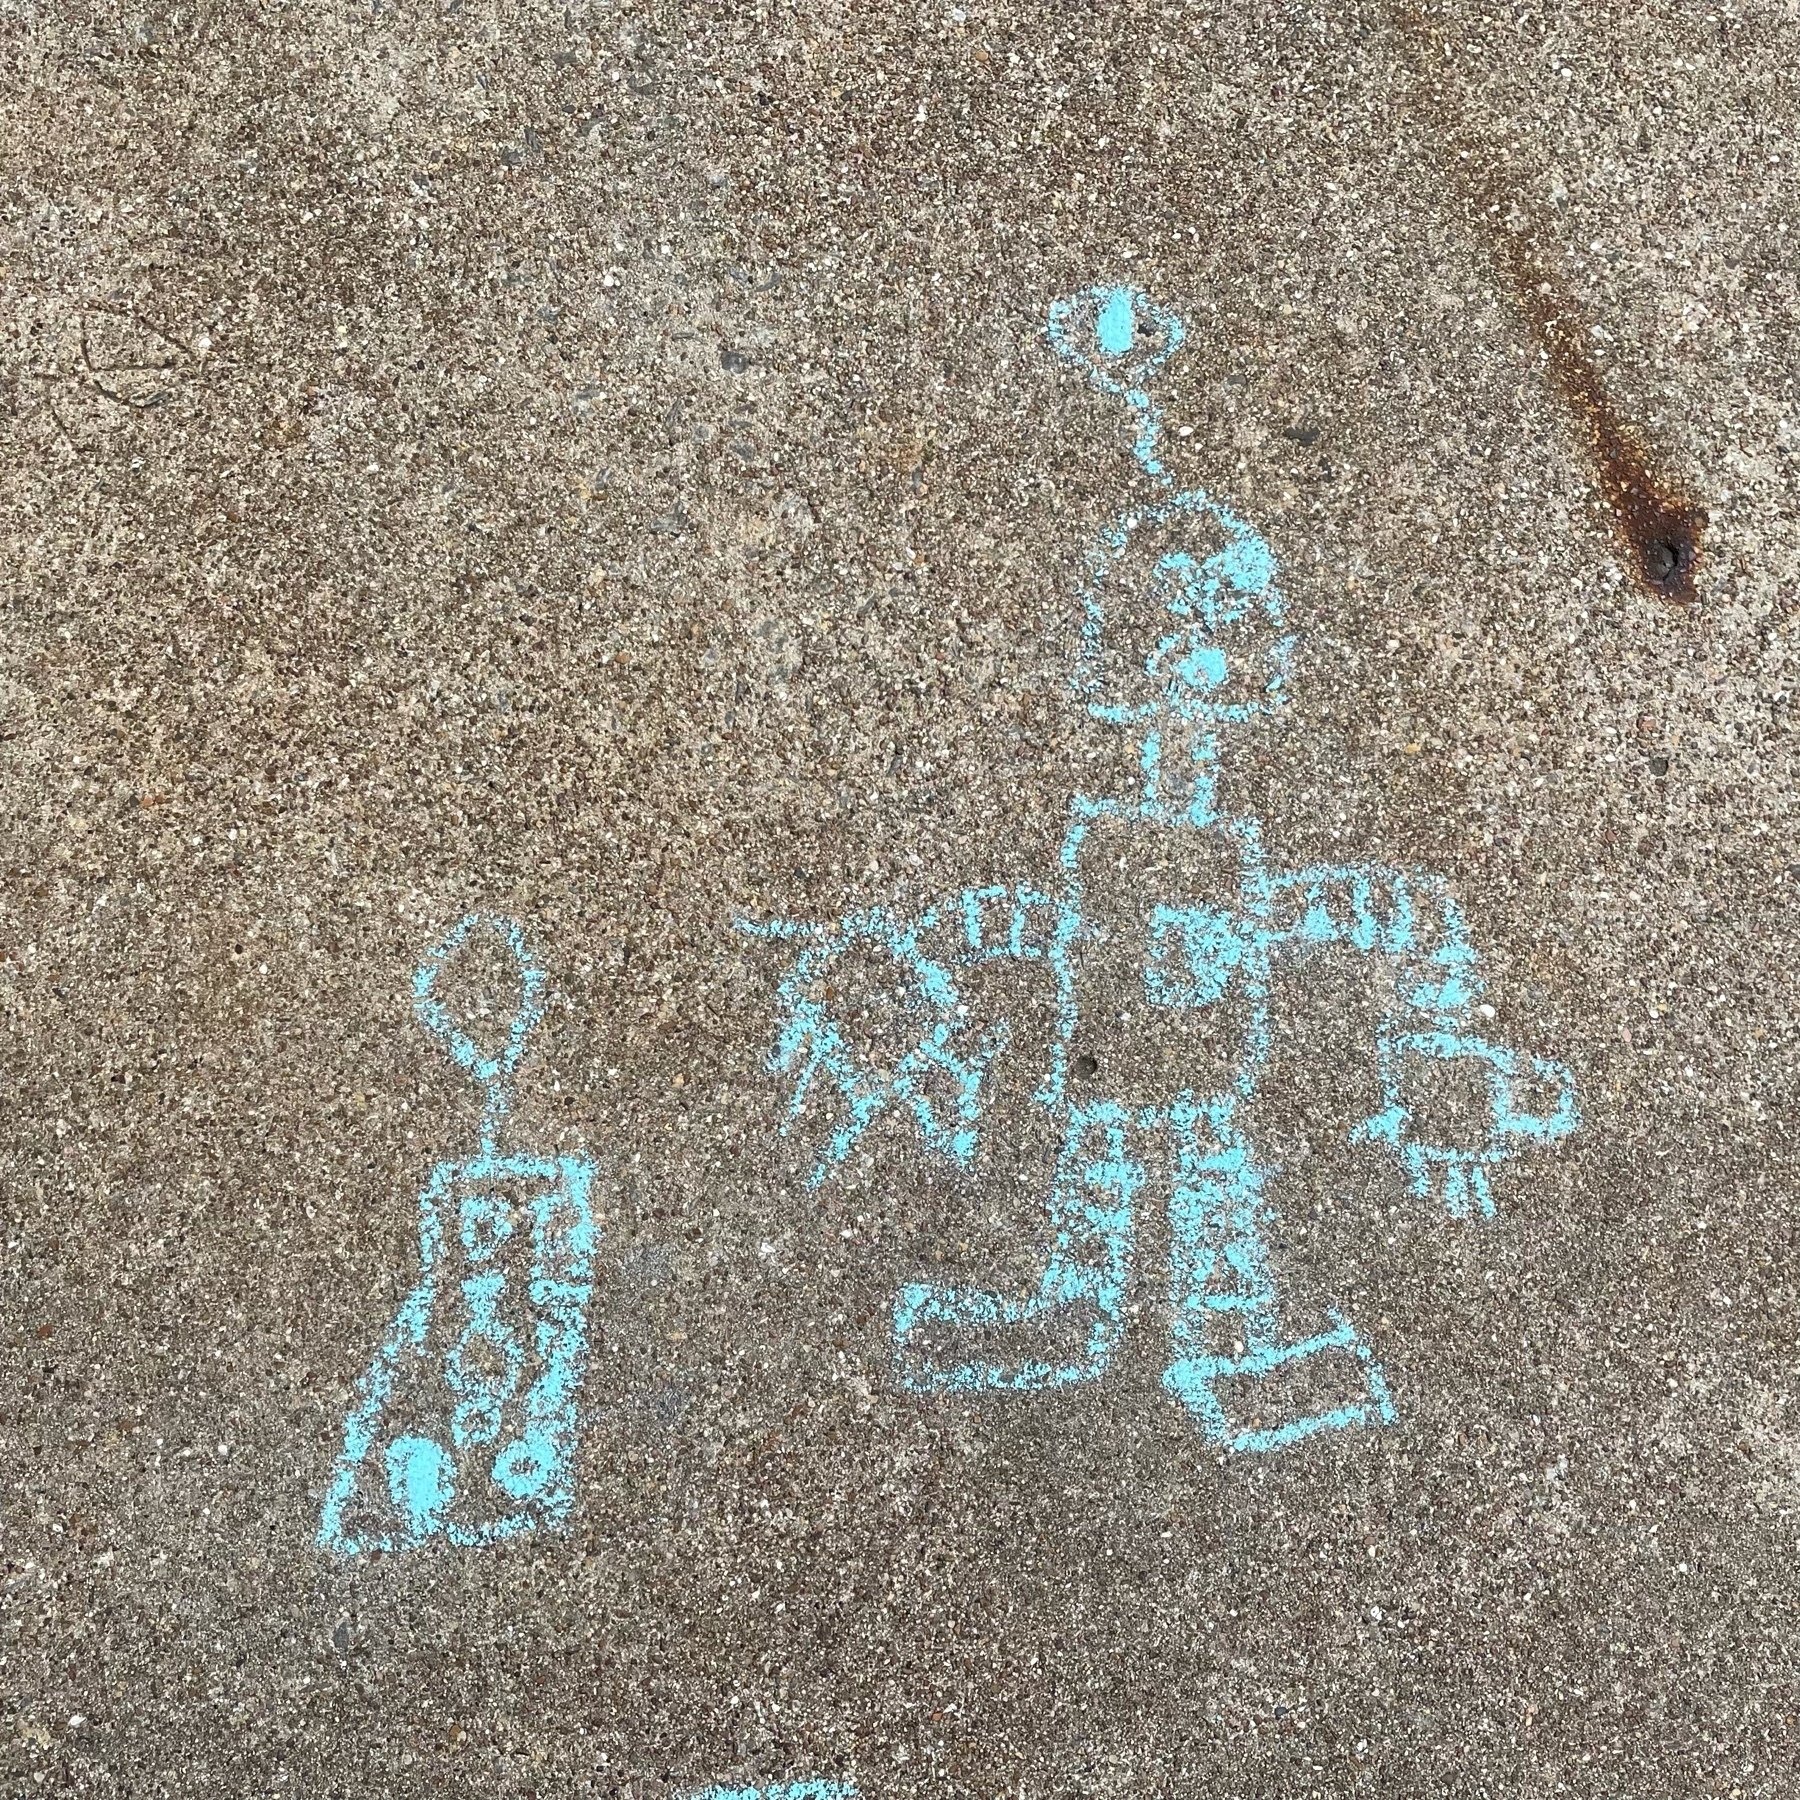 Son's sidewalk chalk robot